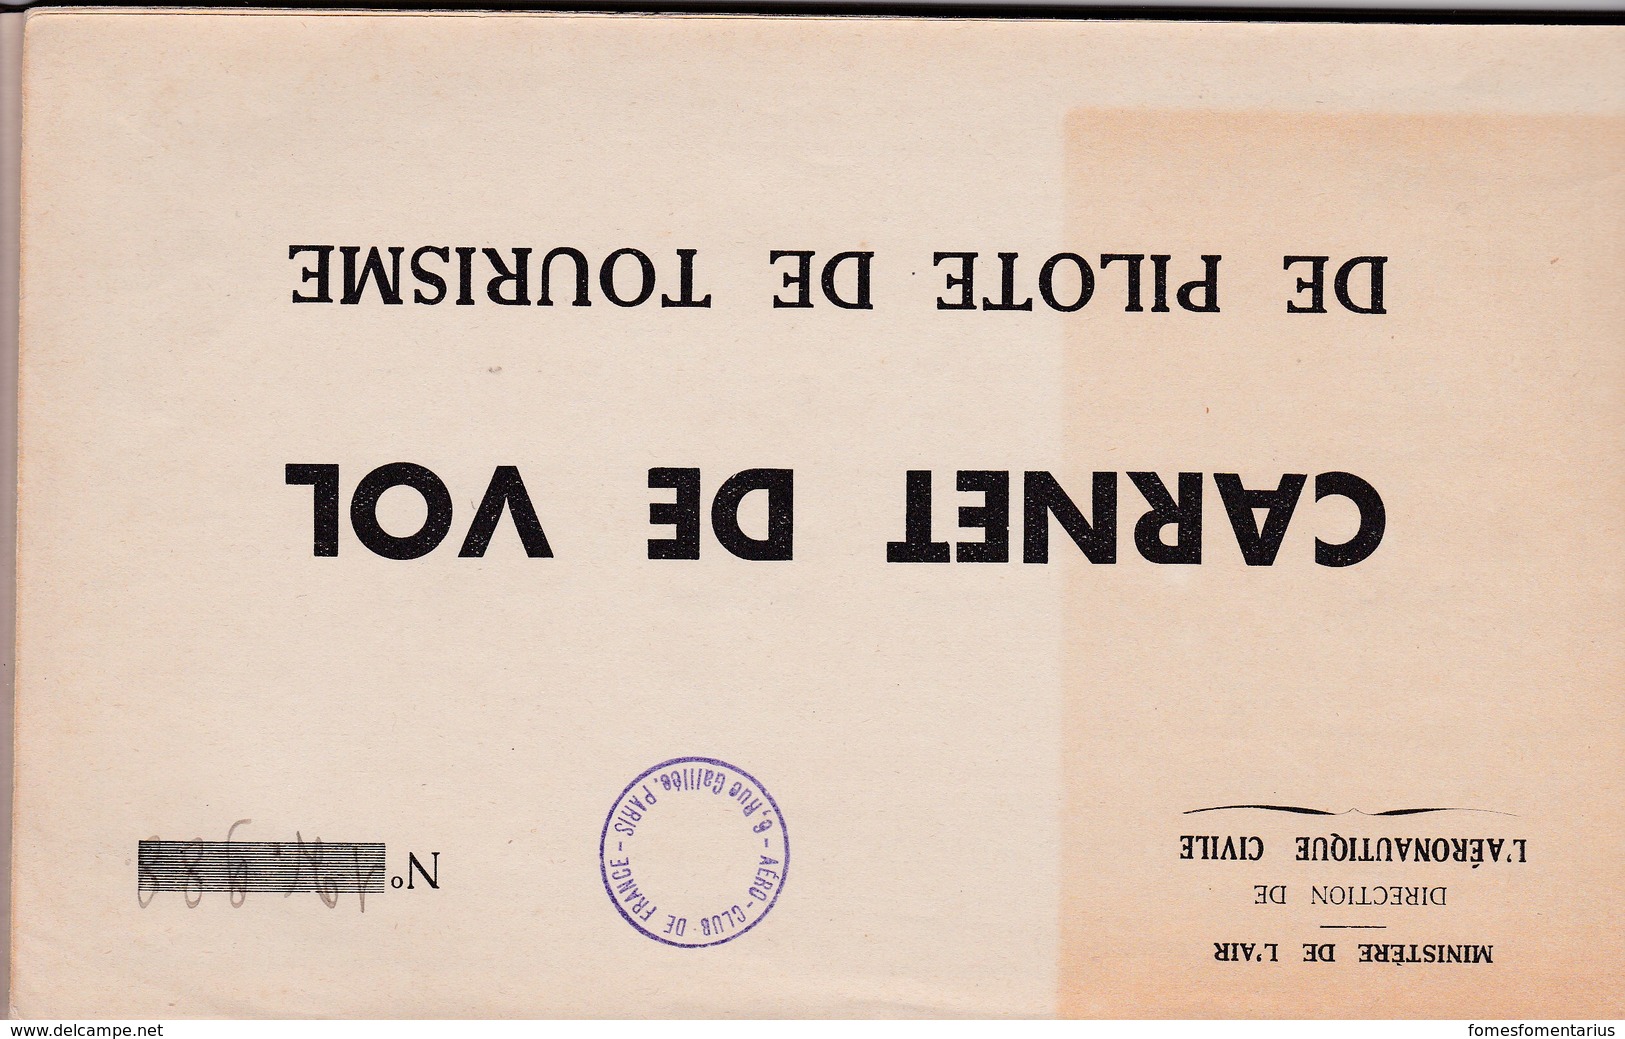 Brevet, licence , carnet de vol 1938  de Pilote d' Avions de Tourisme en EXCELLENT ETAT, voir les 12 scans